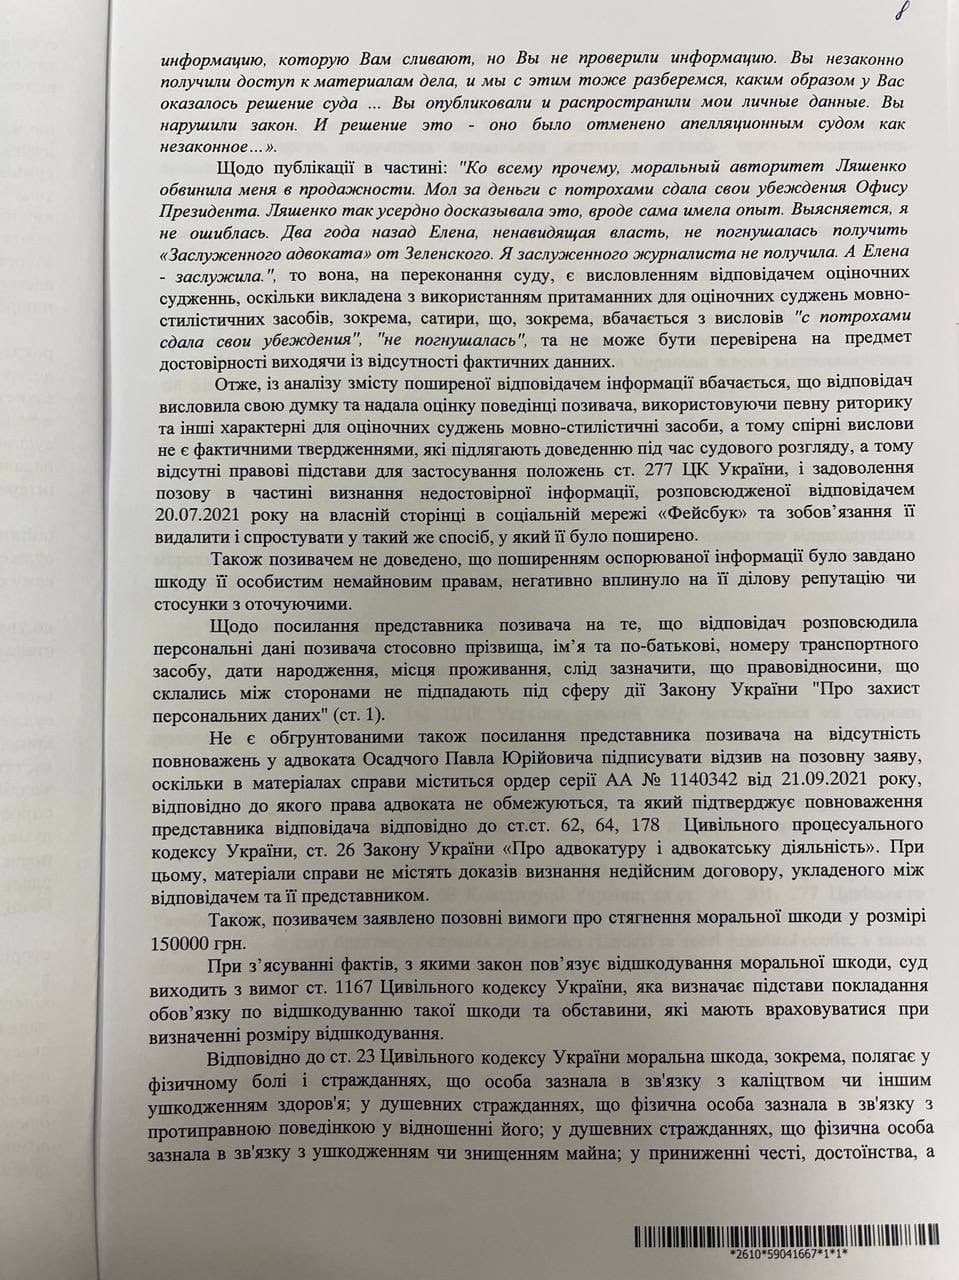 Решение суда относительно иска Льошенко